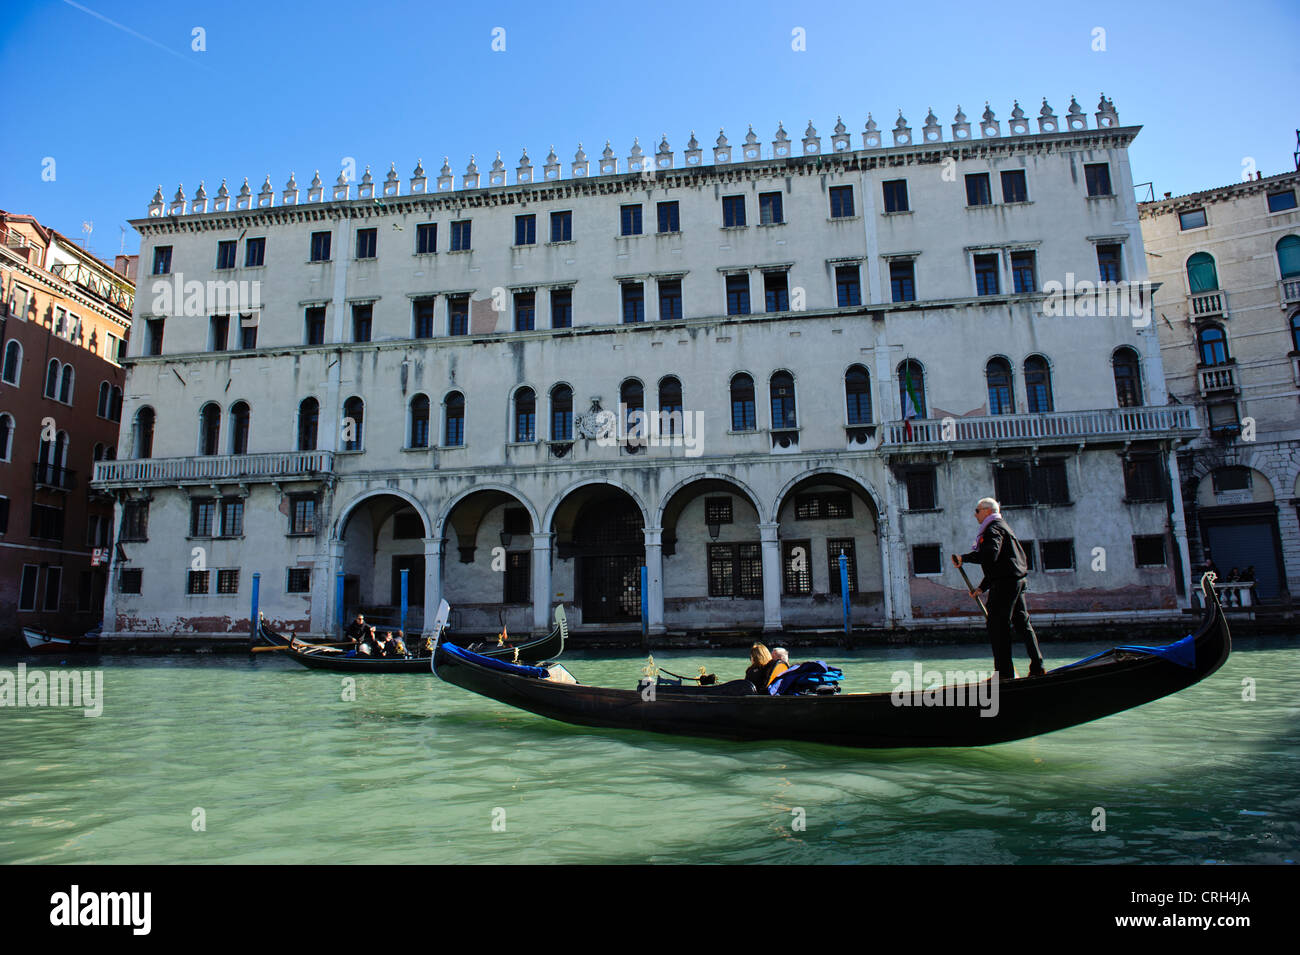 Une télécabine de touristes en face de la Fondaco dei Tedeschi palace par le Grand Canal, Venice, Veneto, Italie. Banque D'Images